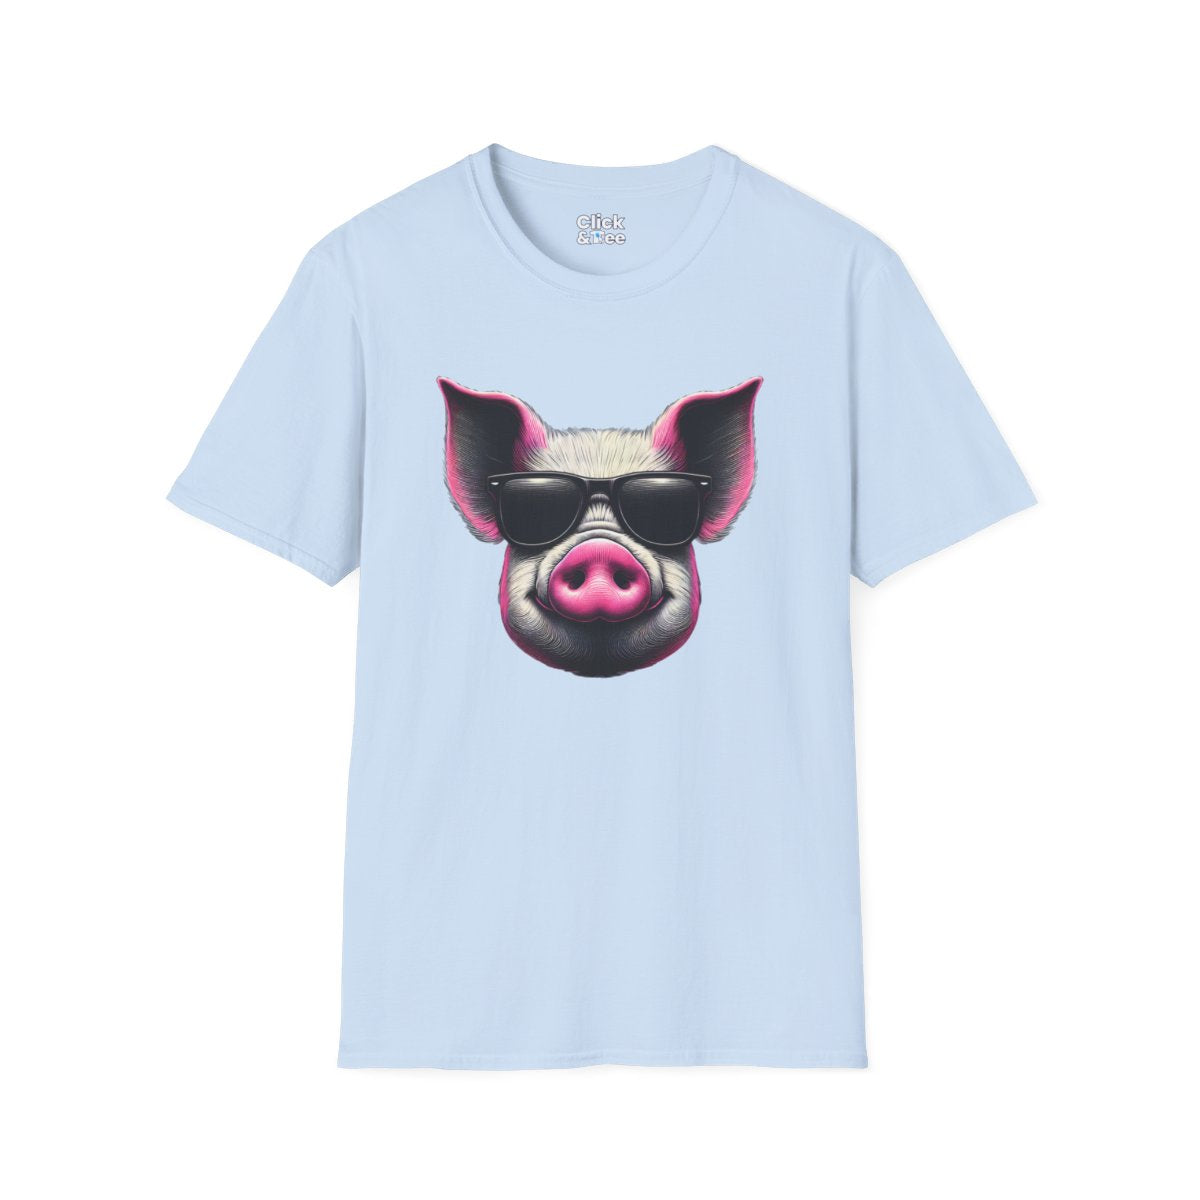 Graphic ArtPink Pig Face Unique T-Shirt Image 14